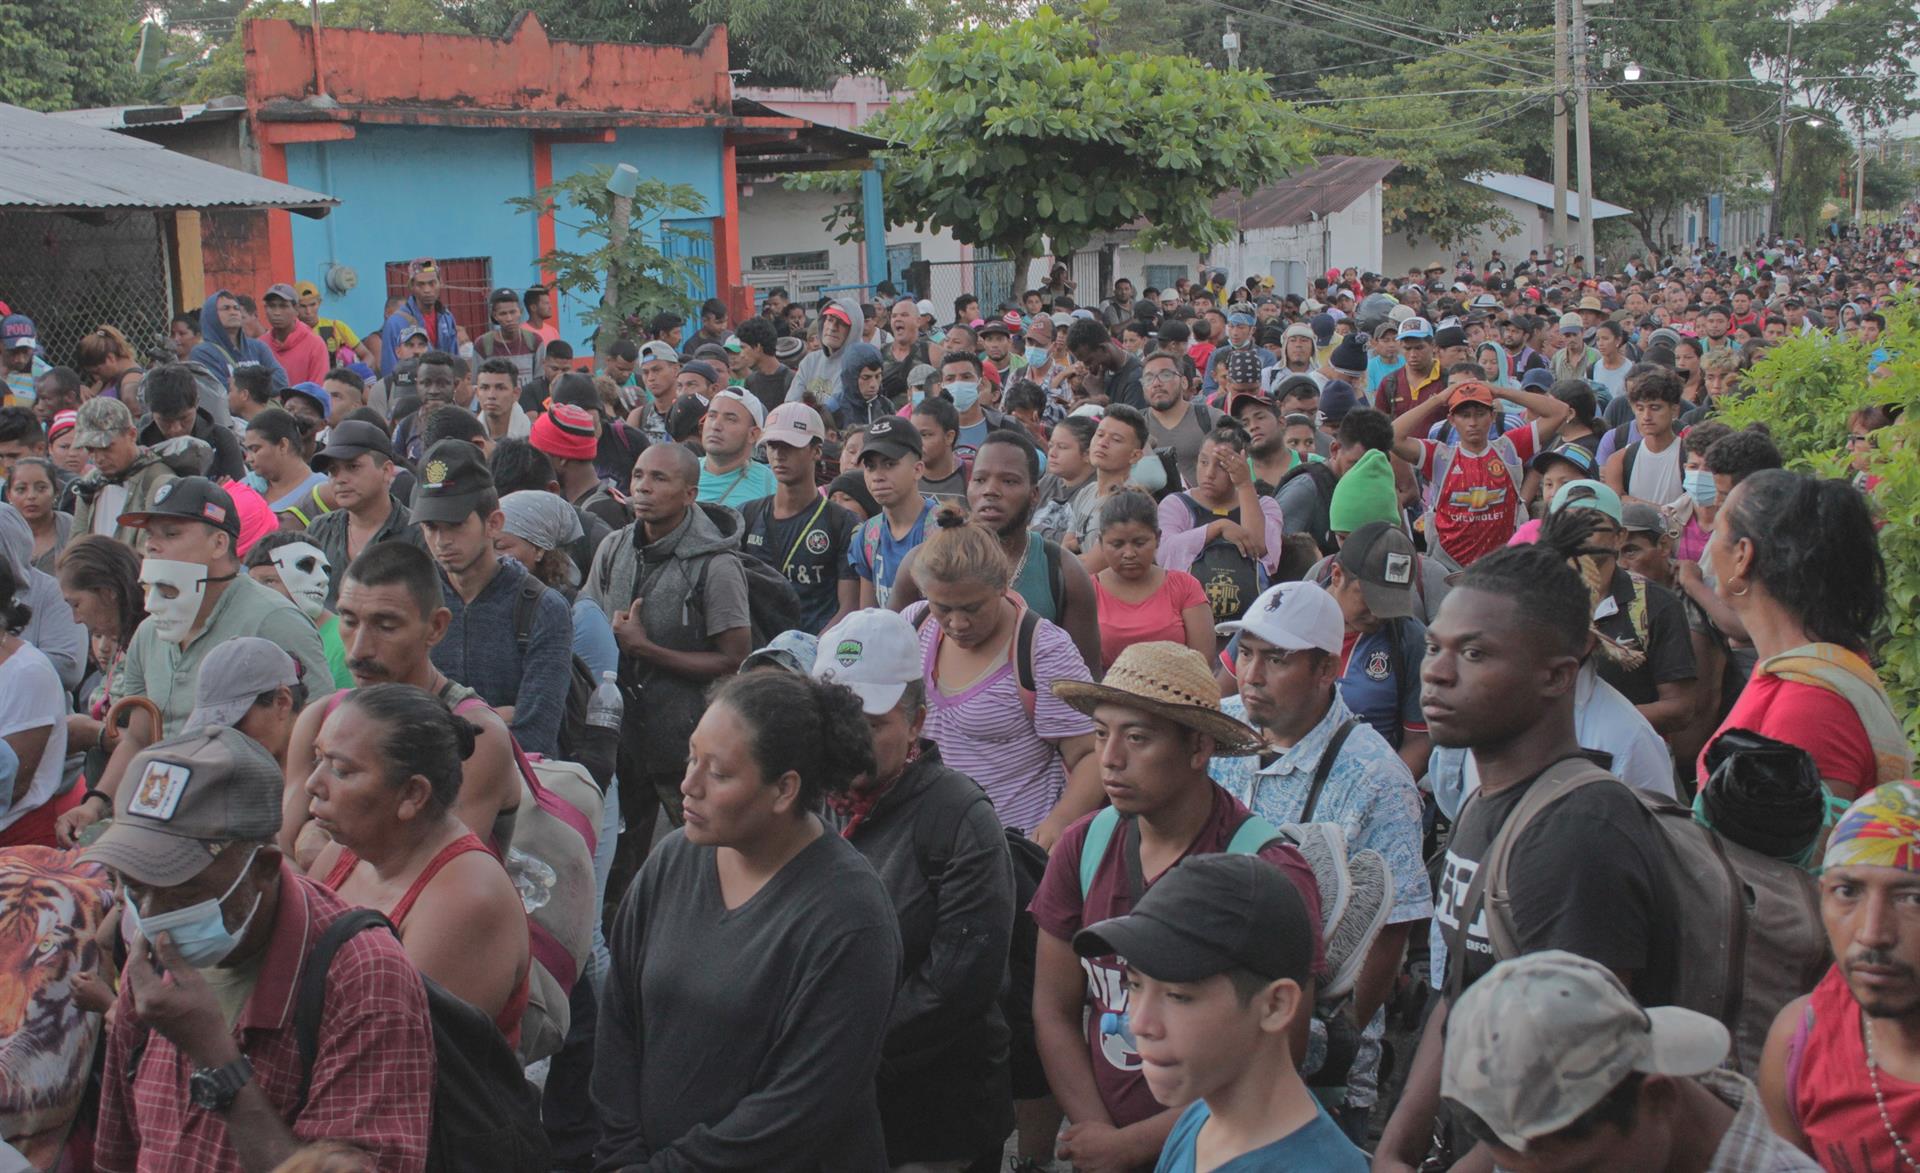 Migrantes, en su mayoría centroamericanos y haitianos, caminan en caravana en la comunidad de Nueva Milenio Valdivia, Chiapas, rumbo a Ciudad de México (EFE)